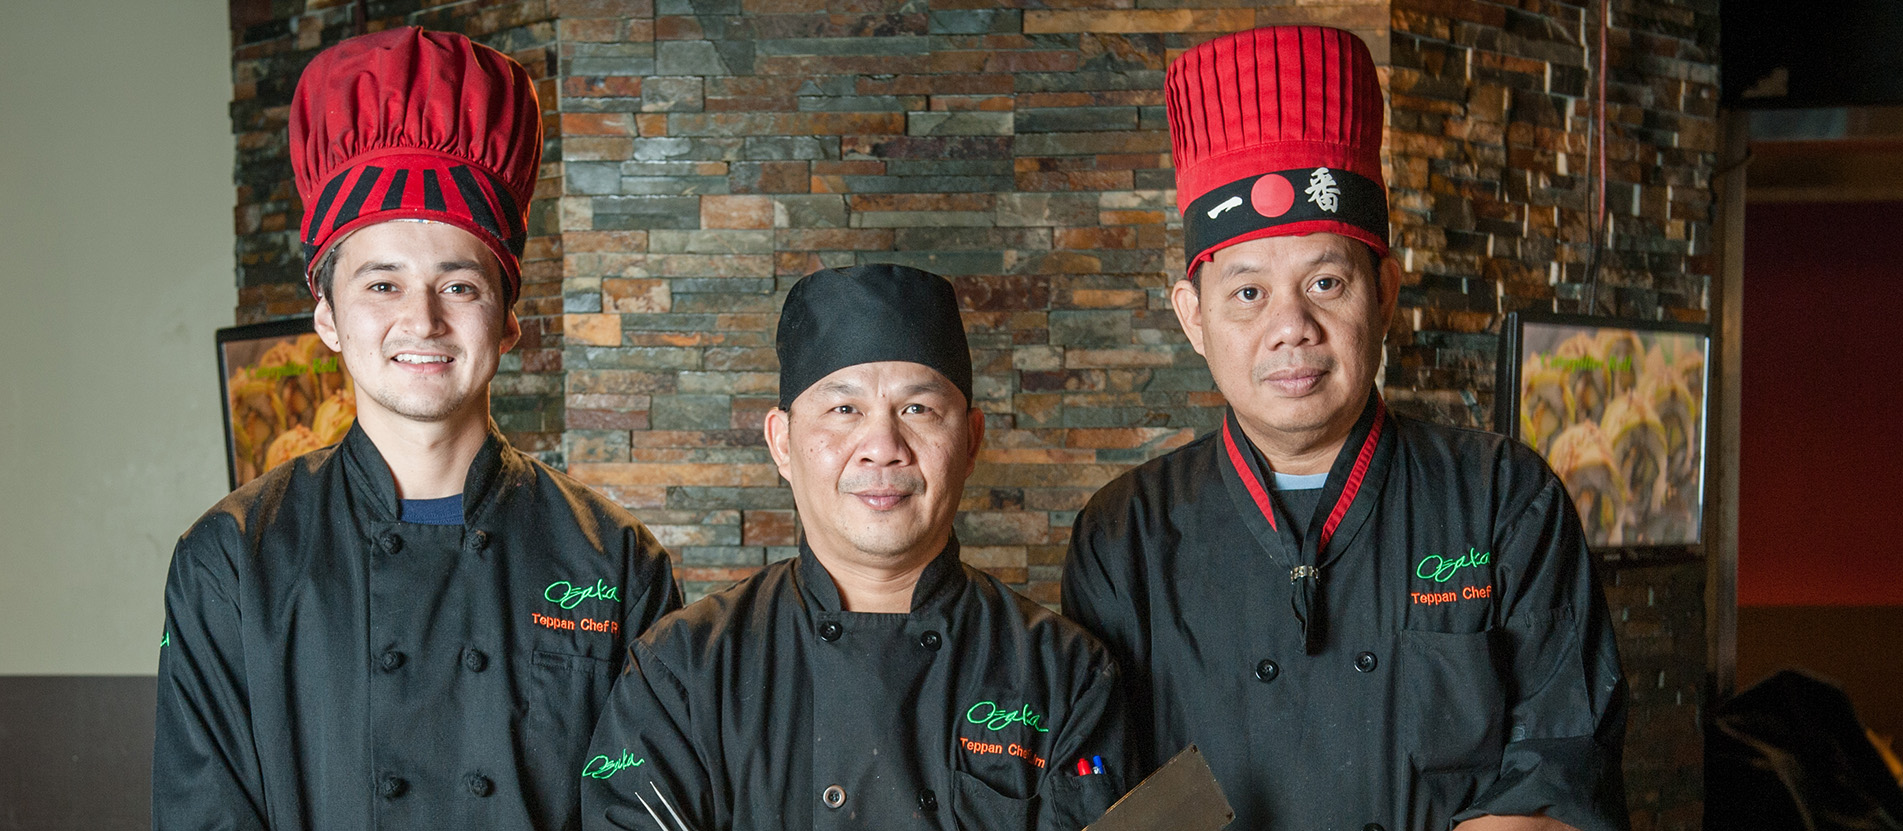 Osaka chefs